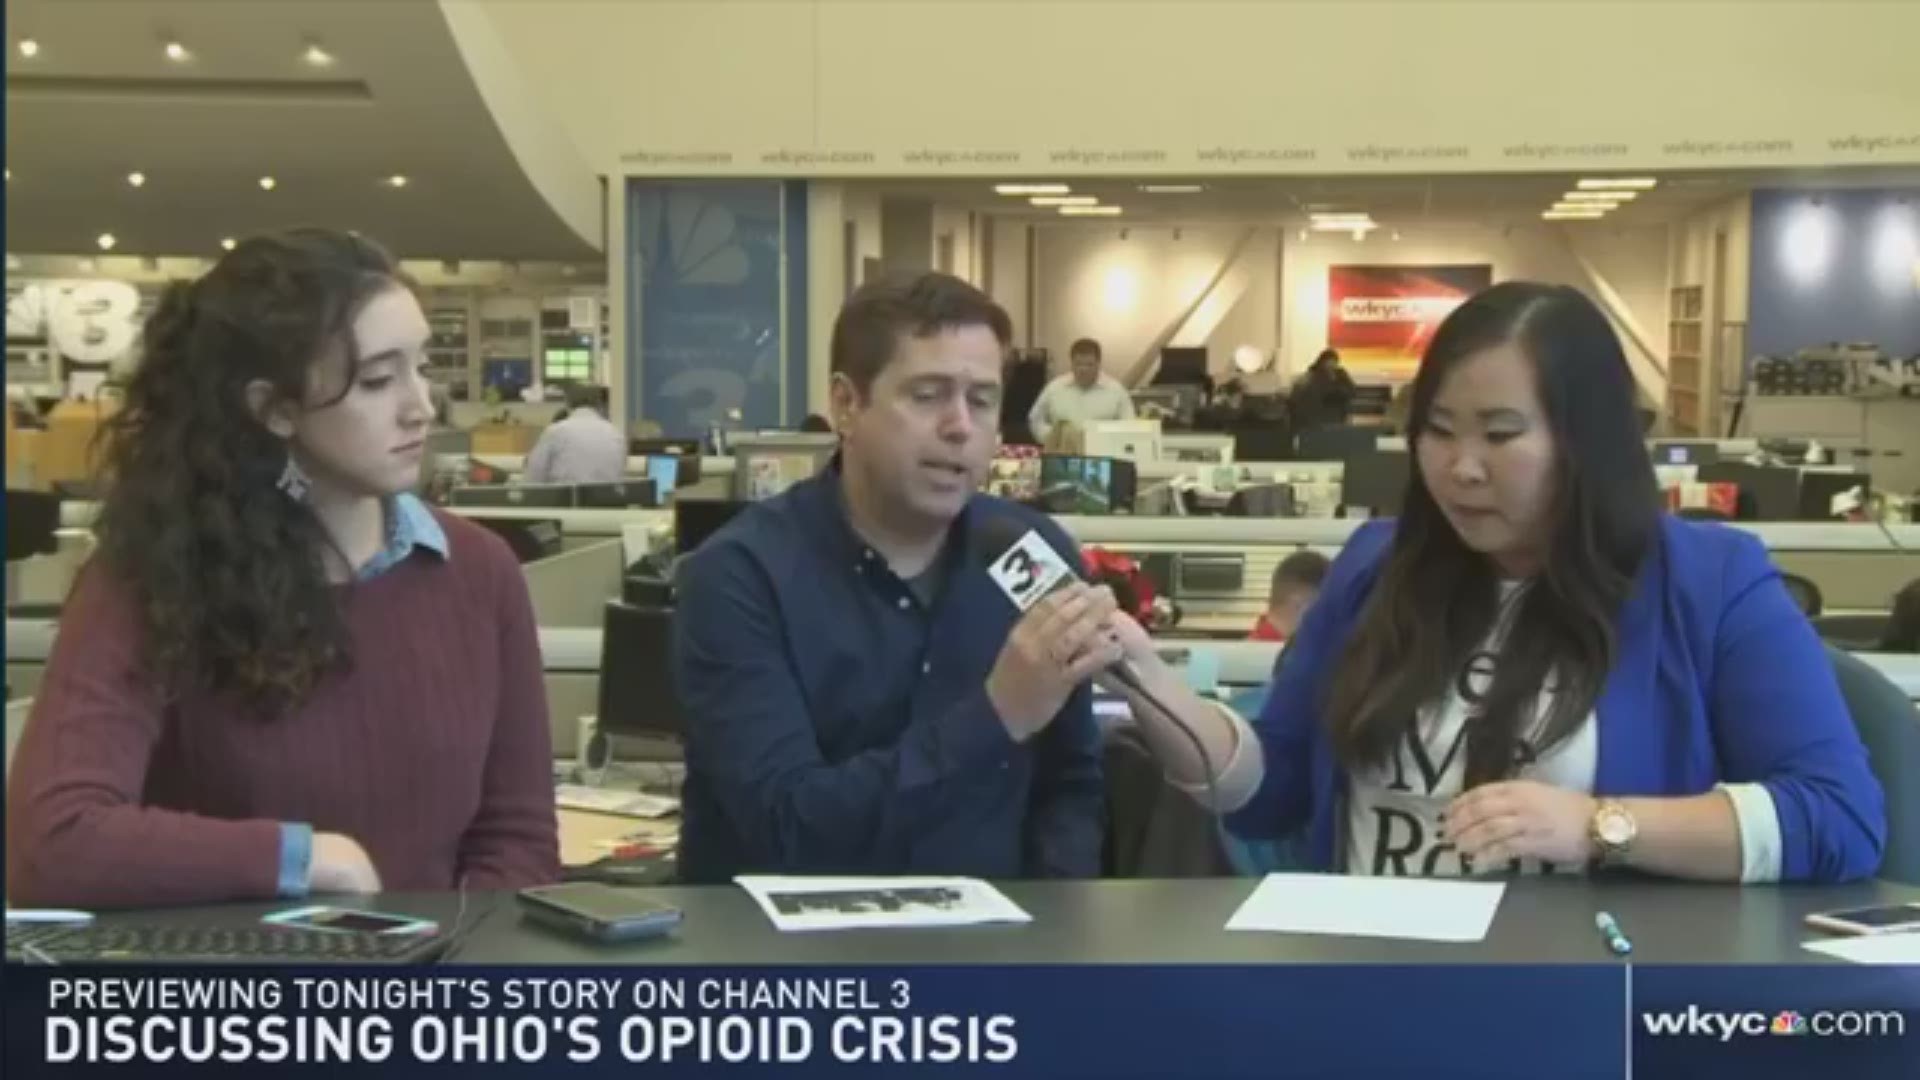 Discussing Ohio's Opioid crisis